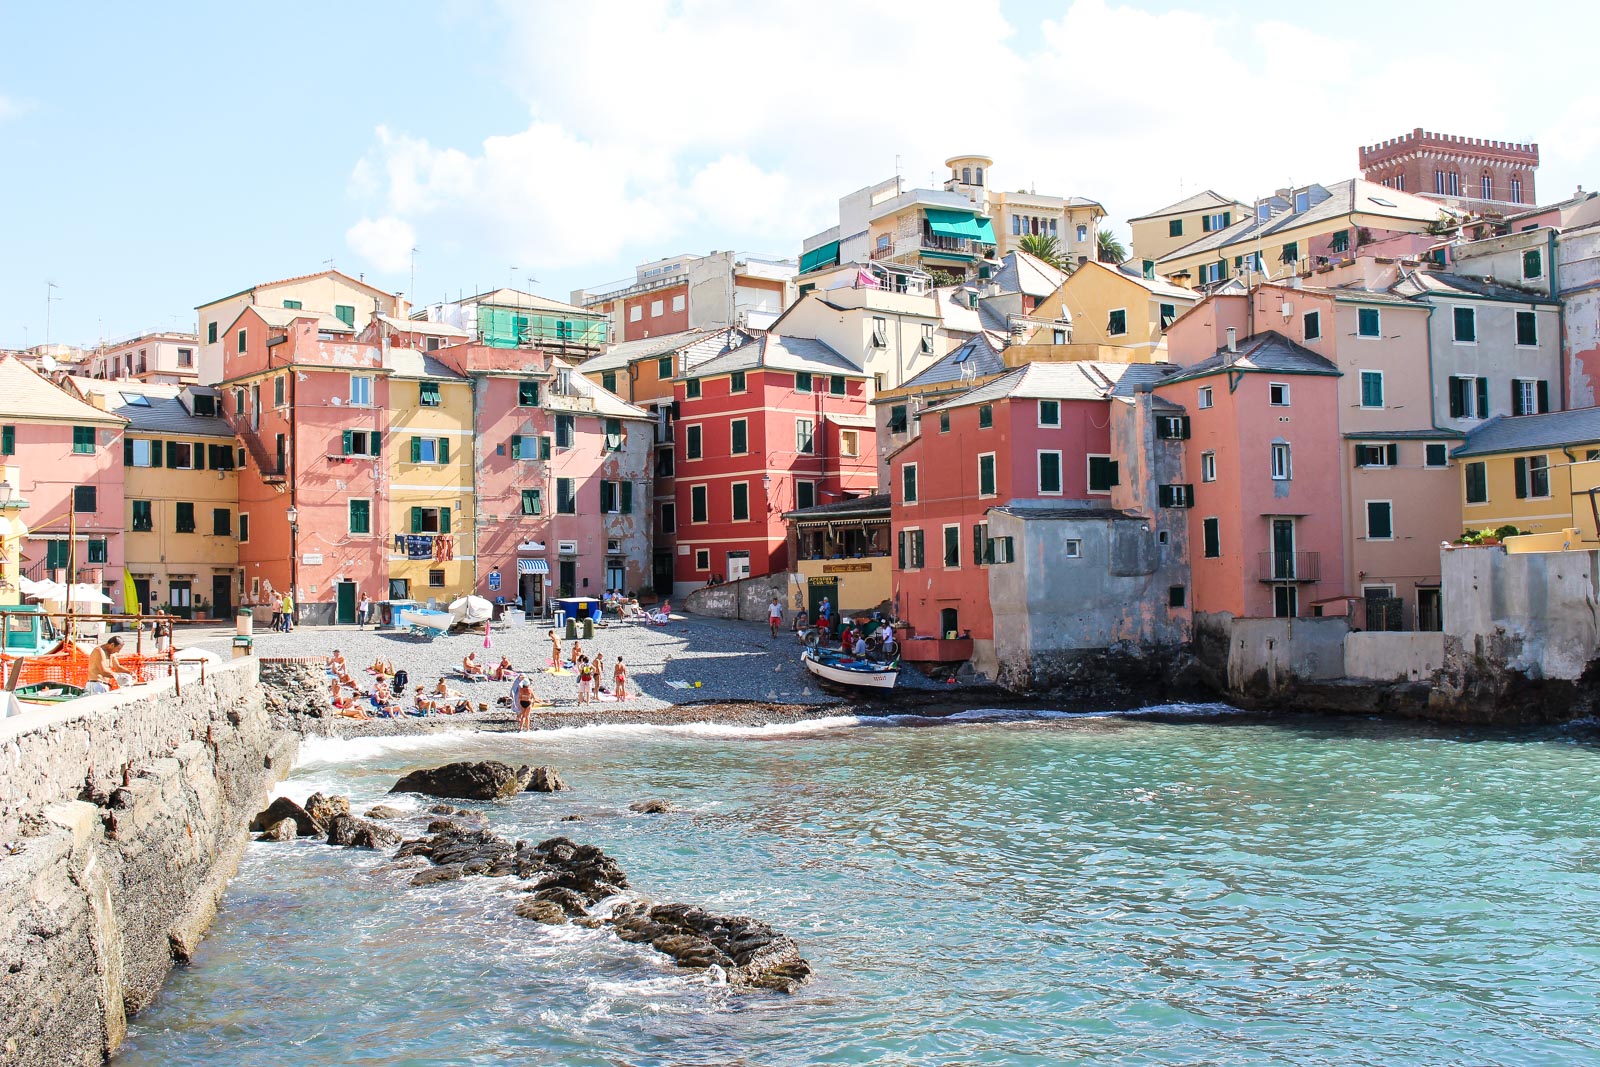 Der Stadteil Boccadasse in Genua ist genauso farbenfroh wie die Cinque Terre.